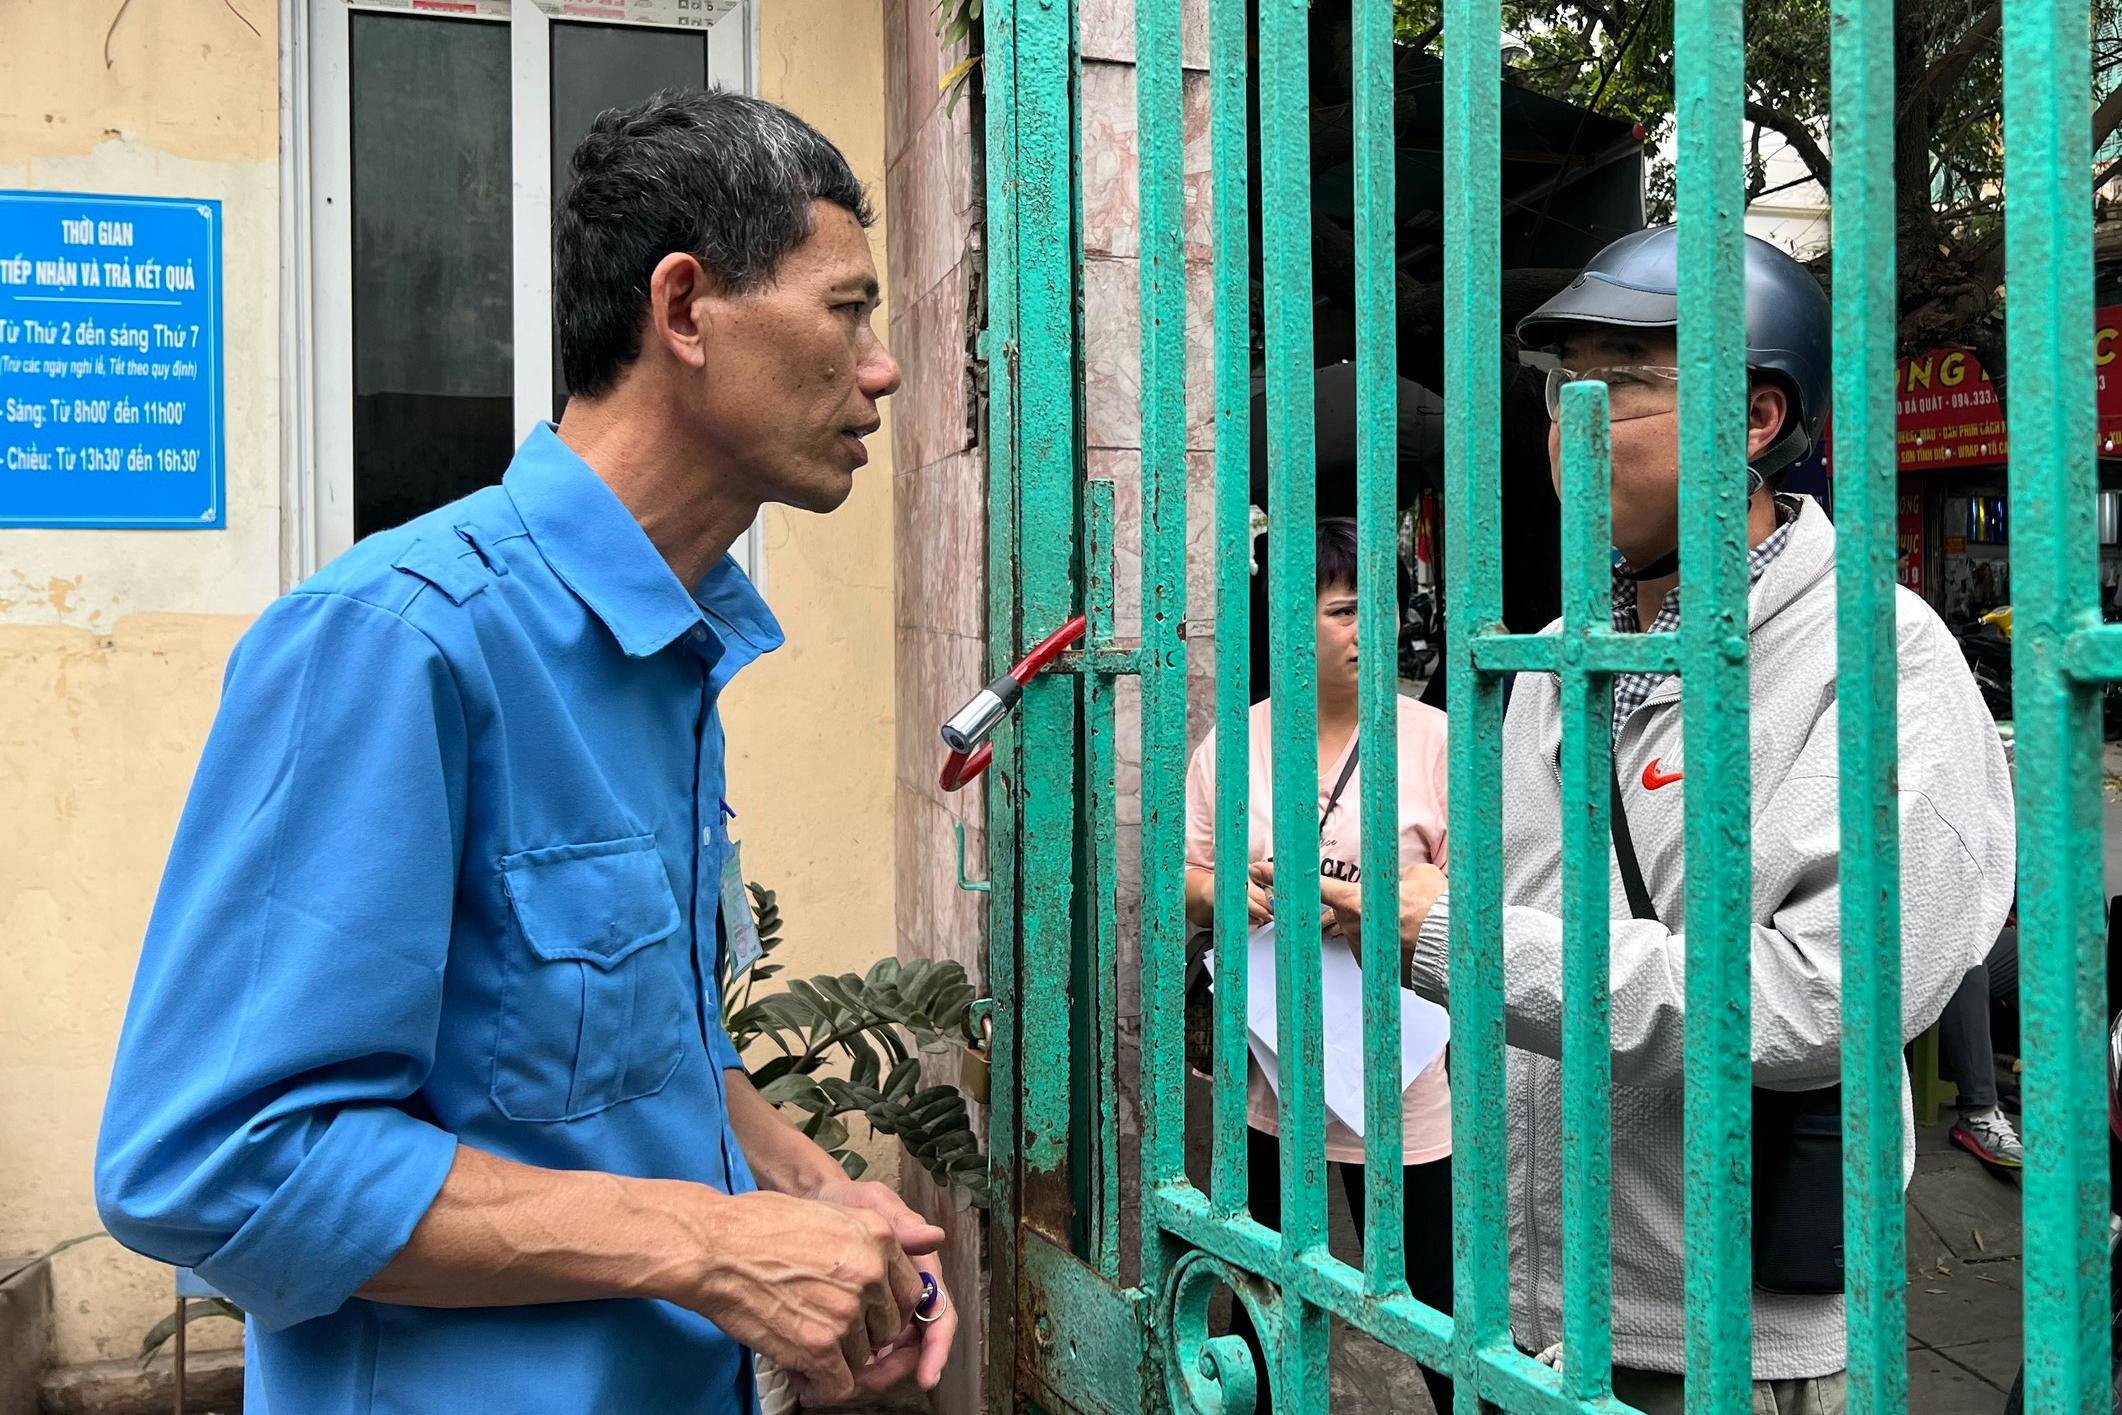 Người dân xếp hàng đổi giấy phép lái xe ở Hà Nội sau tết Nguyên đán- Ảnh 3.